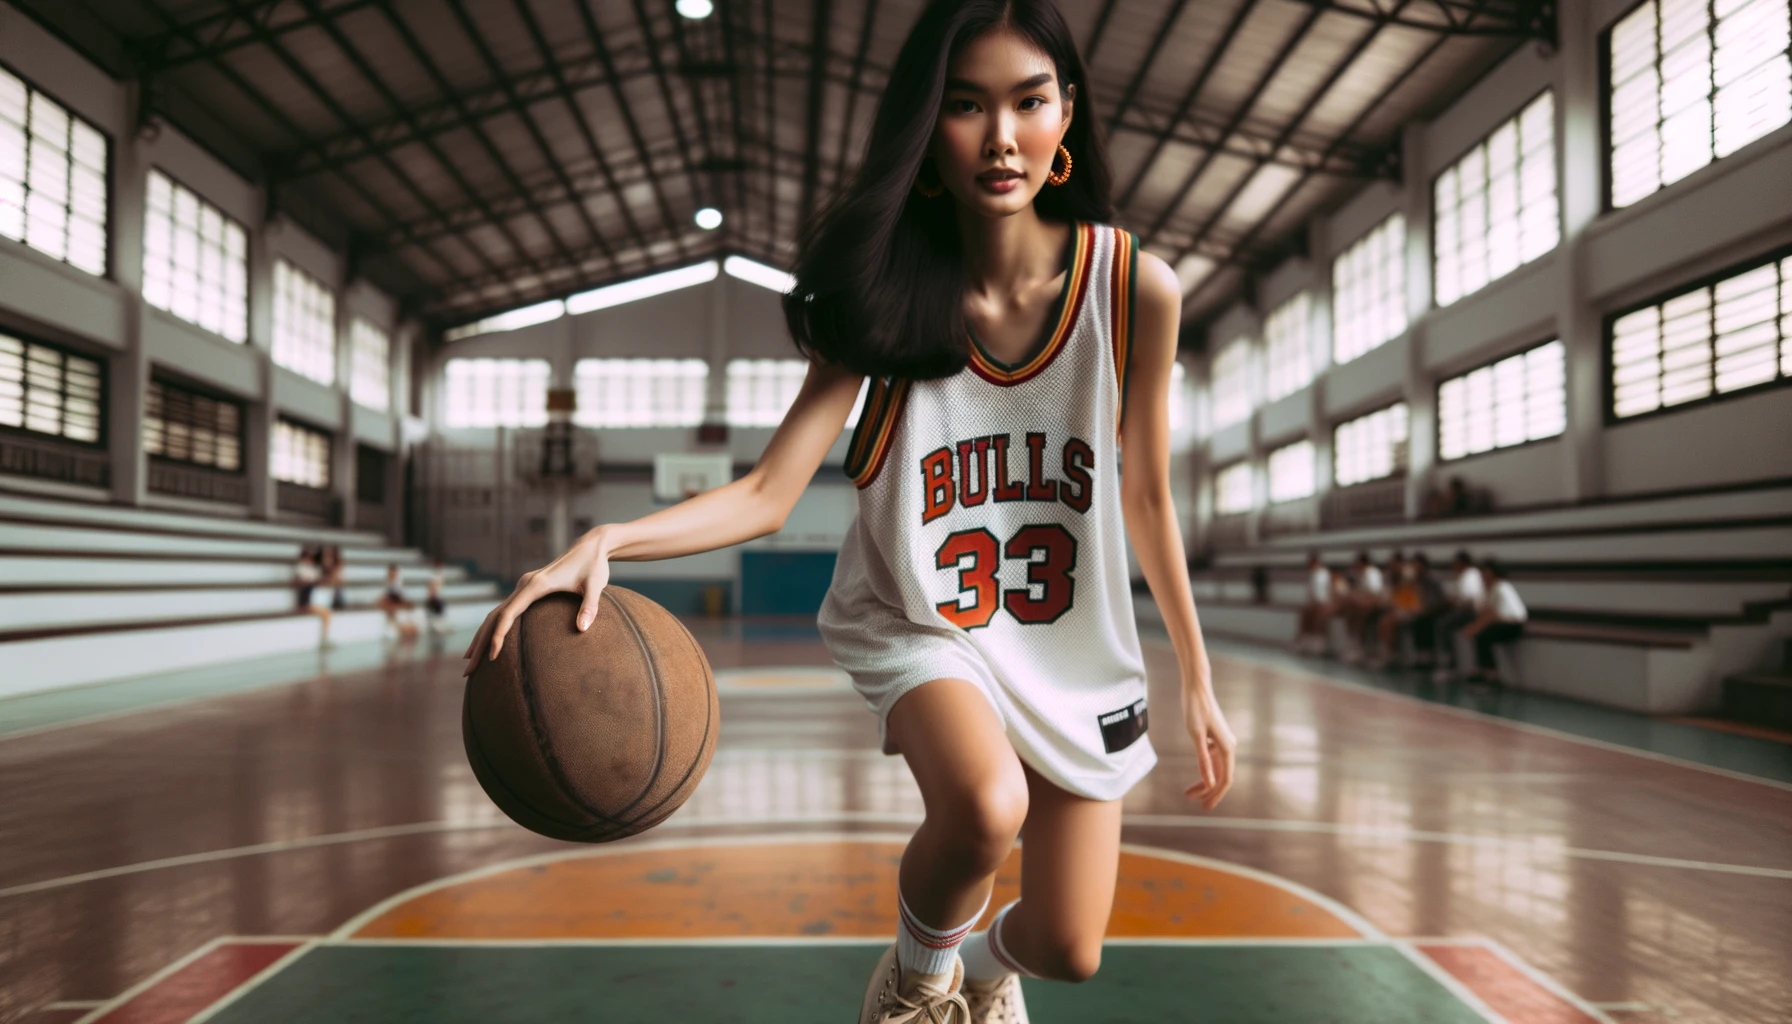 Foto einer jungen Frau asiatischer Abstammung, die einen Basketball dribbelt, während sie ein altes Basketballtrikot auf einem Hallenplatz trägt